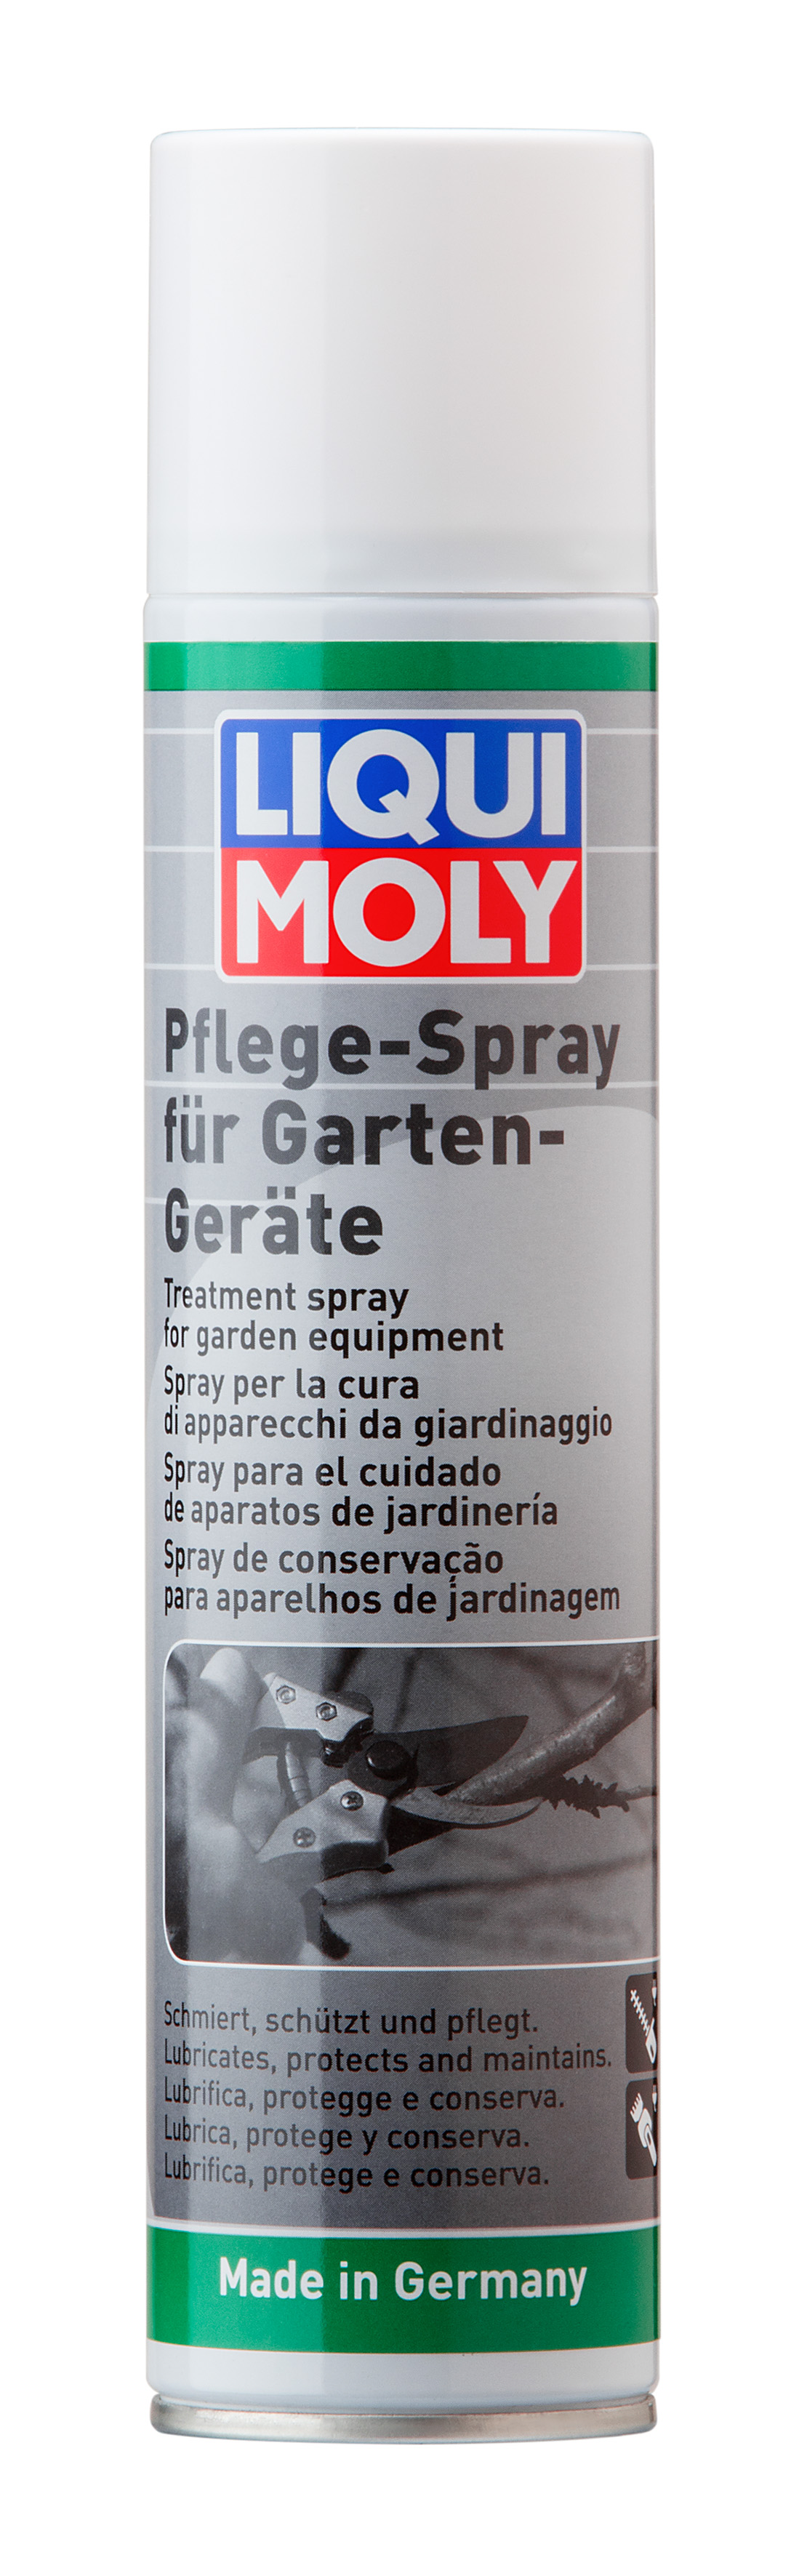 LIQUI MOLY Садовый спрей Pflege-Spray fur Garten-Gerate (0,3л)